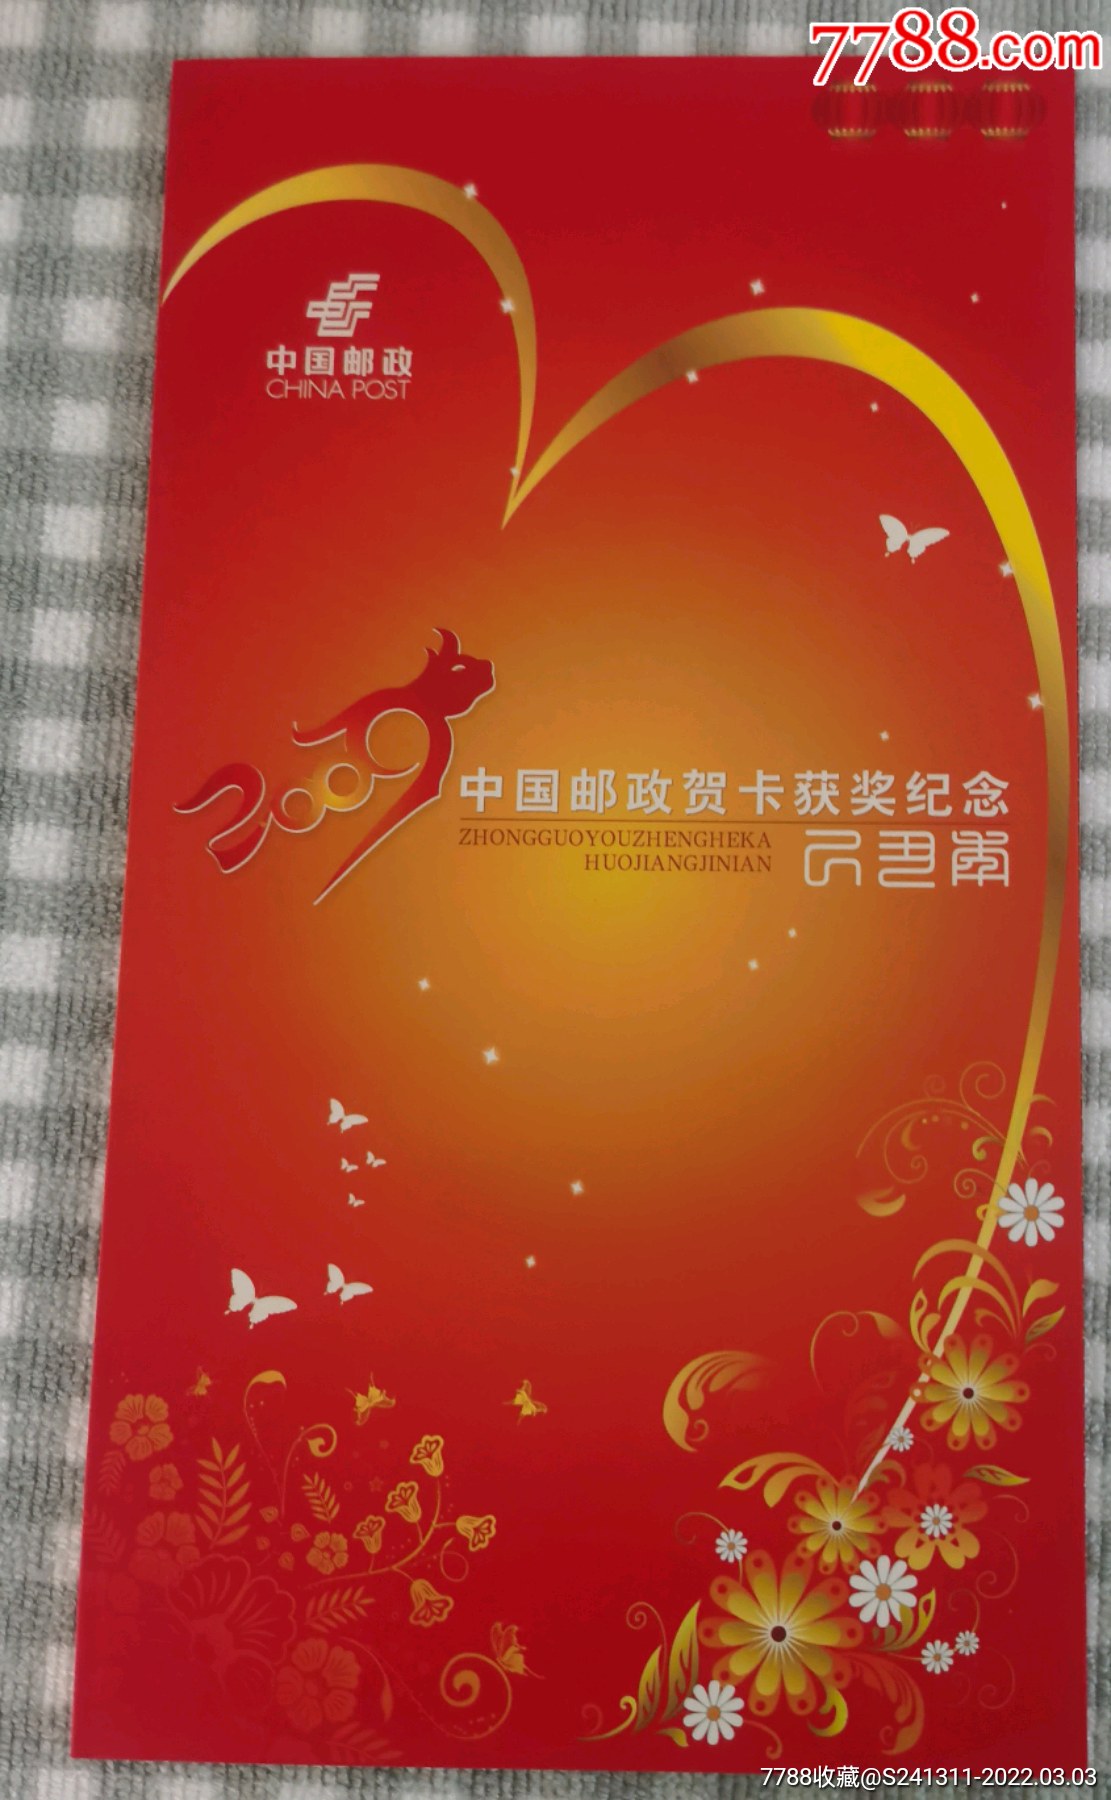 2009年中国邮政贺卡获奖纪念